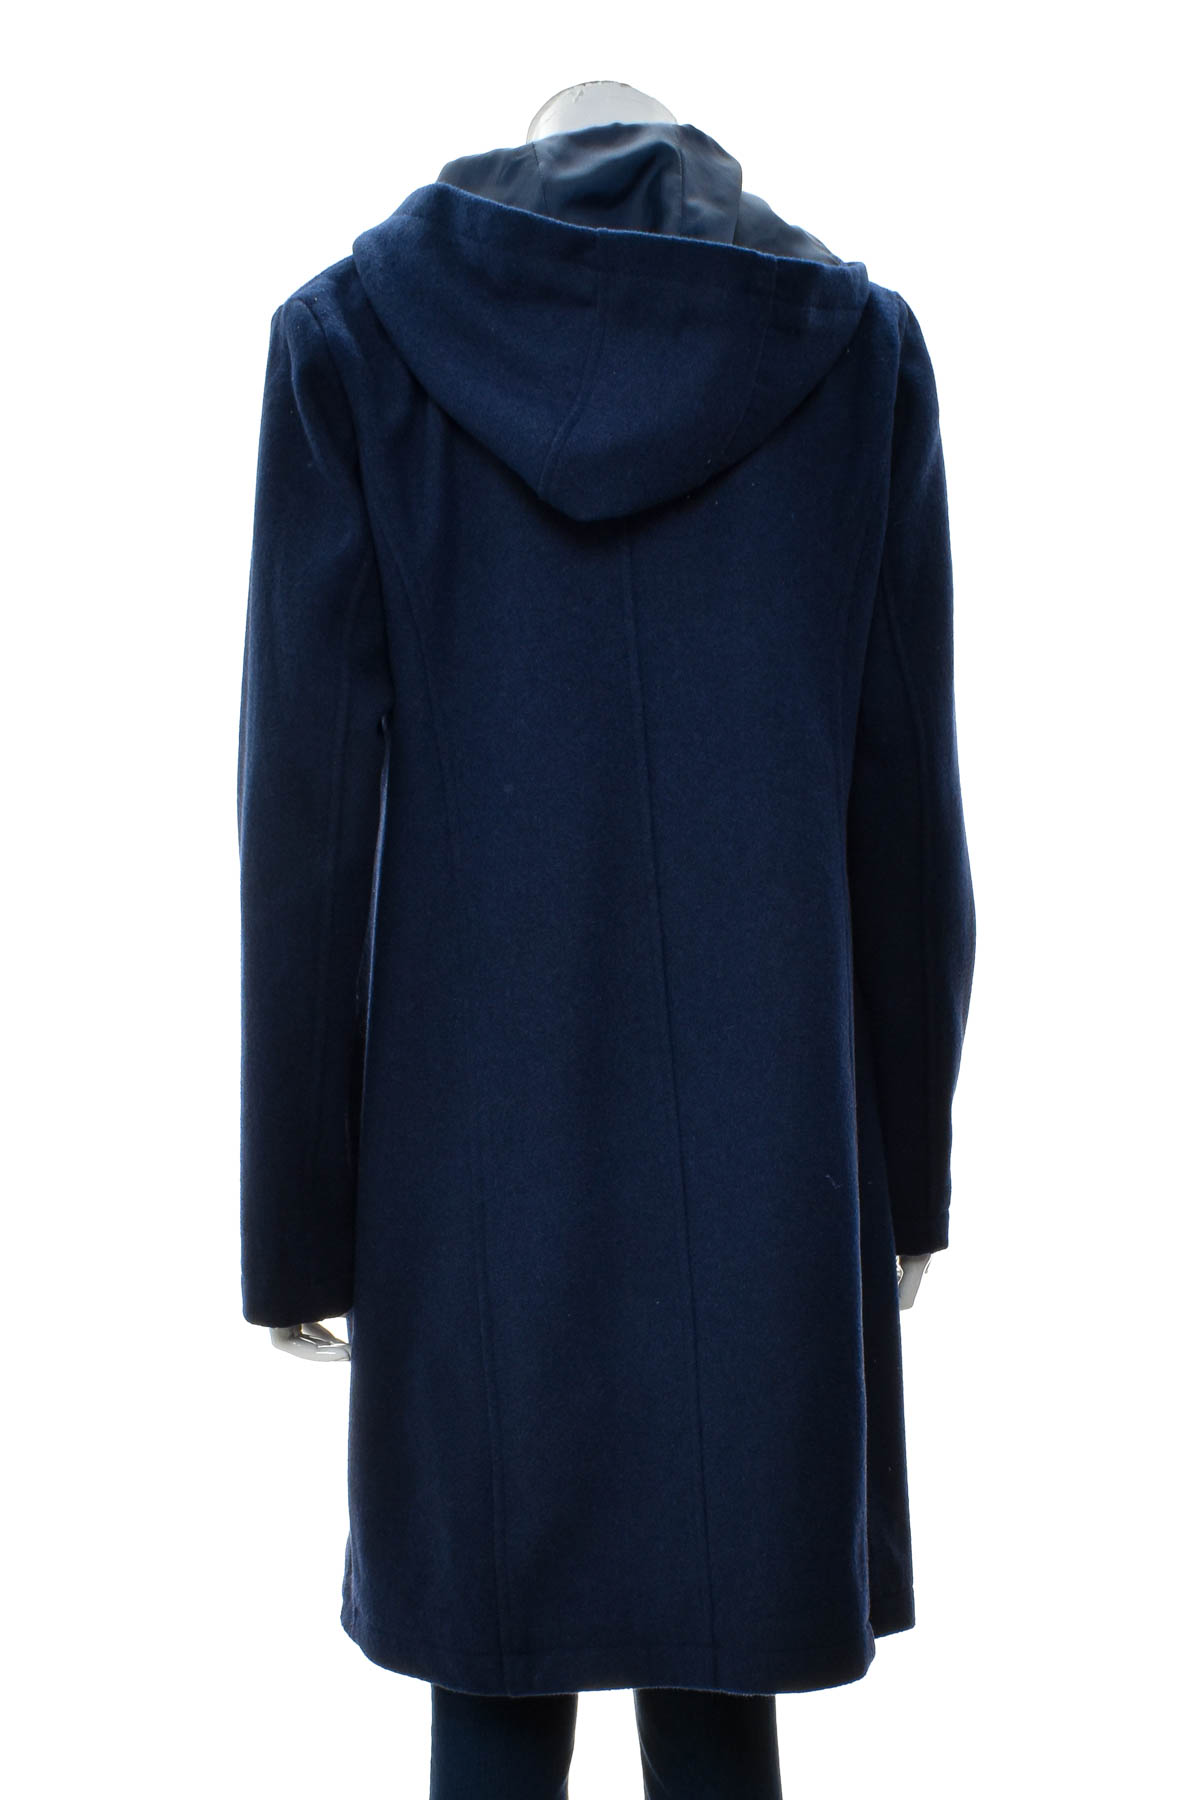 Γυναικείο παλτό - Bpc Bonprix Collection - 1